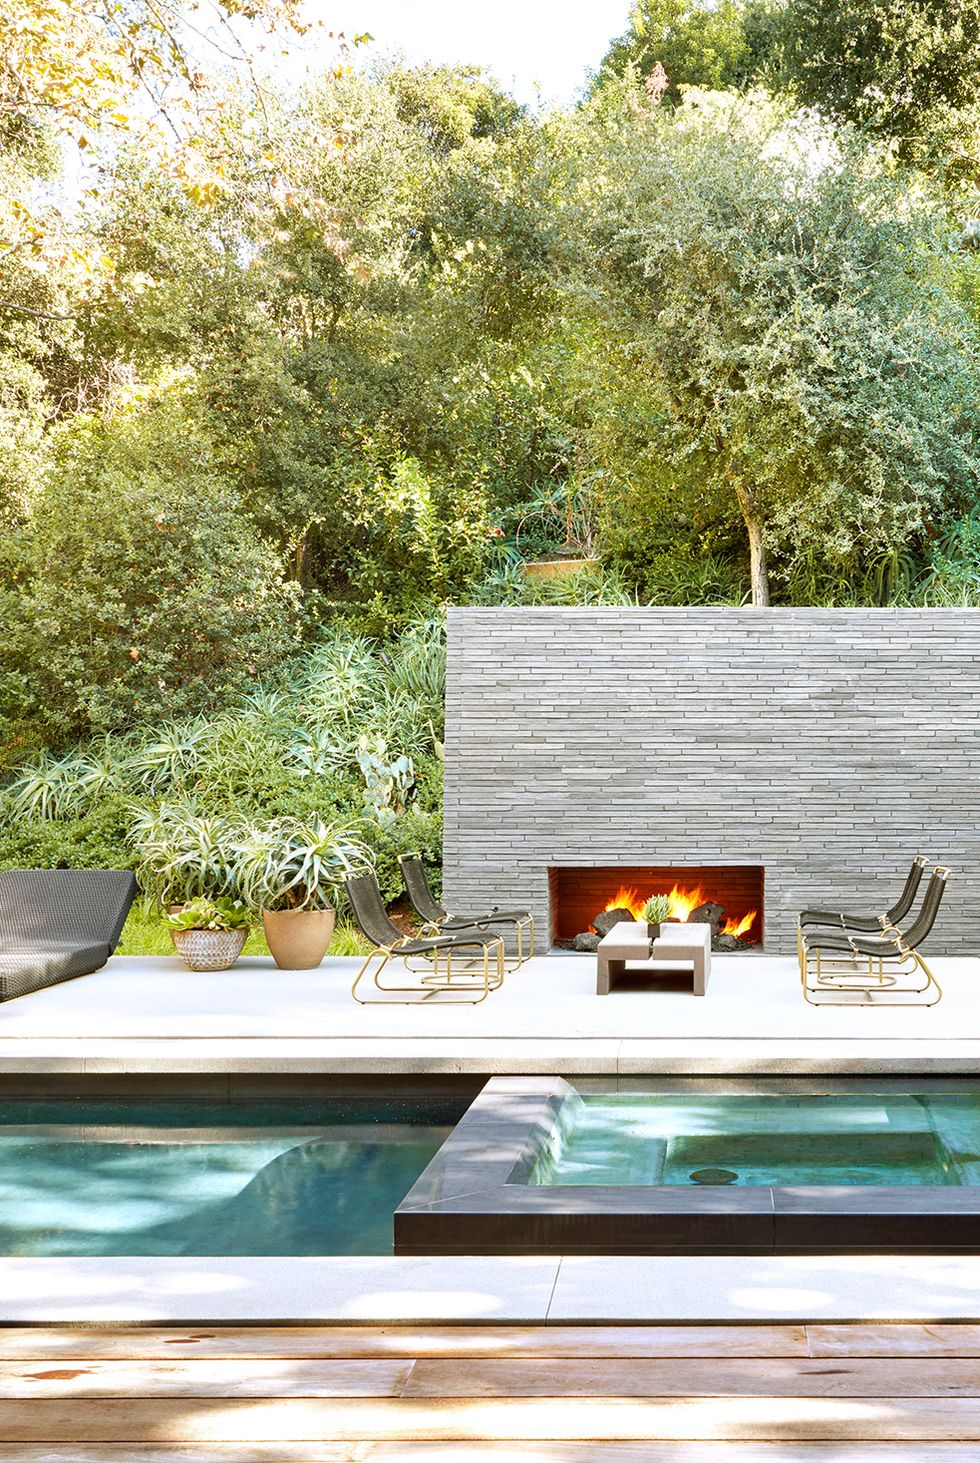 Hình ảnh bể bơi được thiết kế liền kề với spa tại nhà